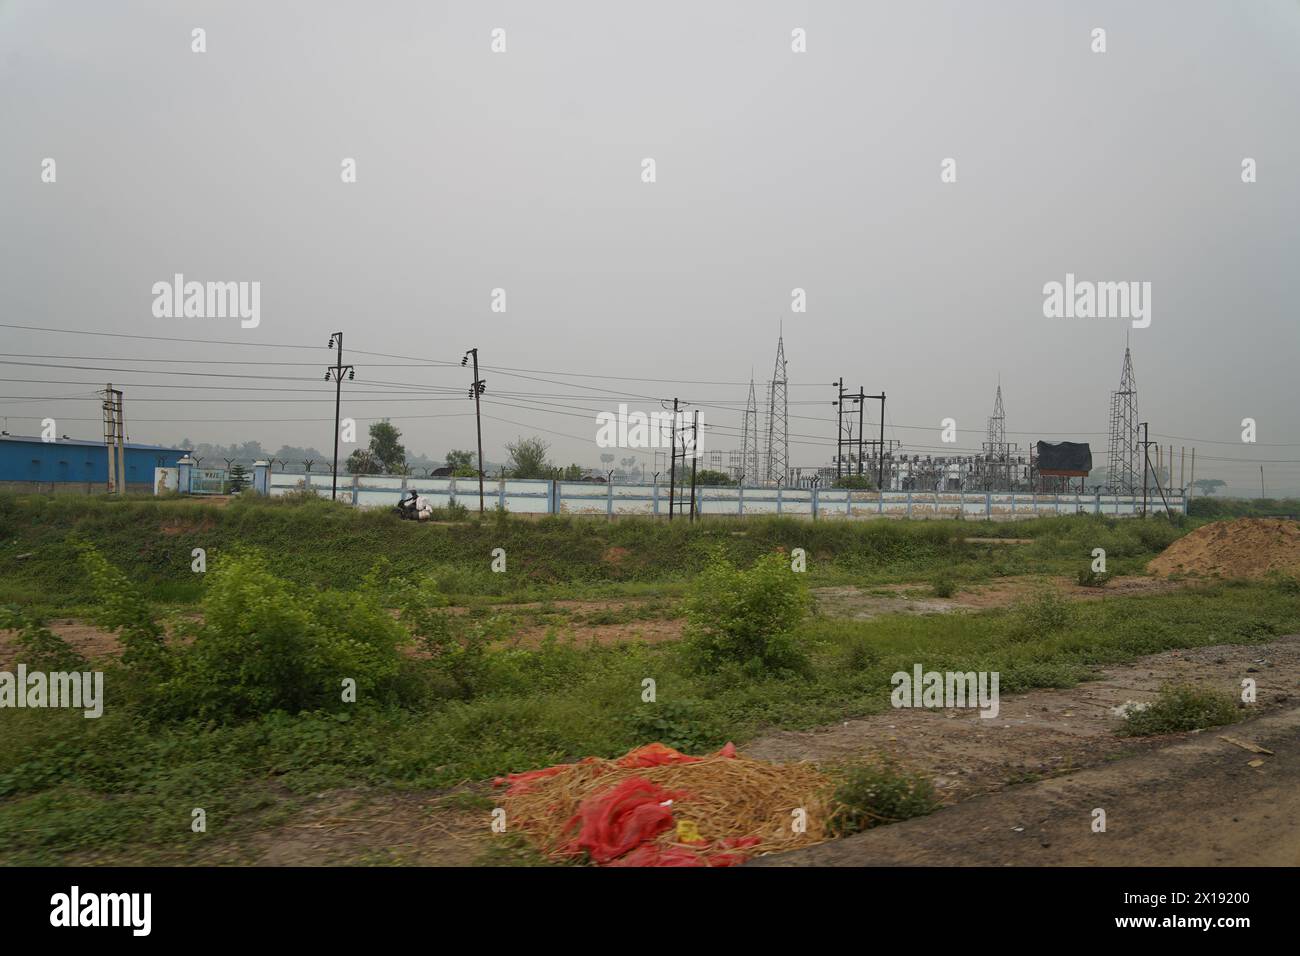 Umspannwerk für das umstrittene Gelände der Automobilfabrik Tata Nano. Neben NH-16. Singur im Bezirk Hoodly, Westbengalen, Indien. Stockfoto